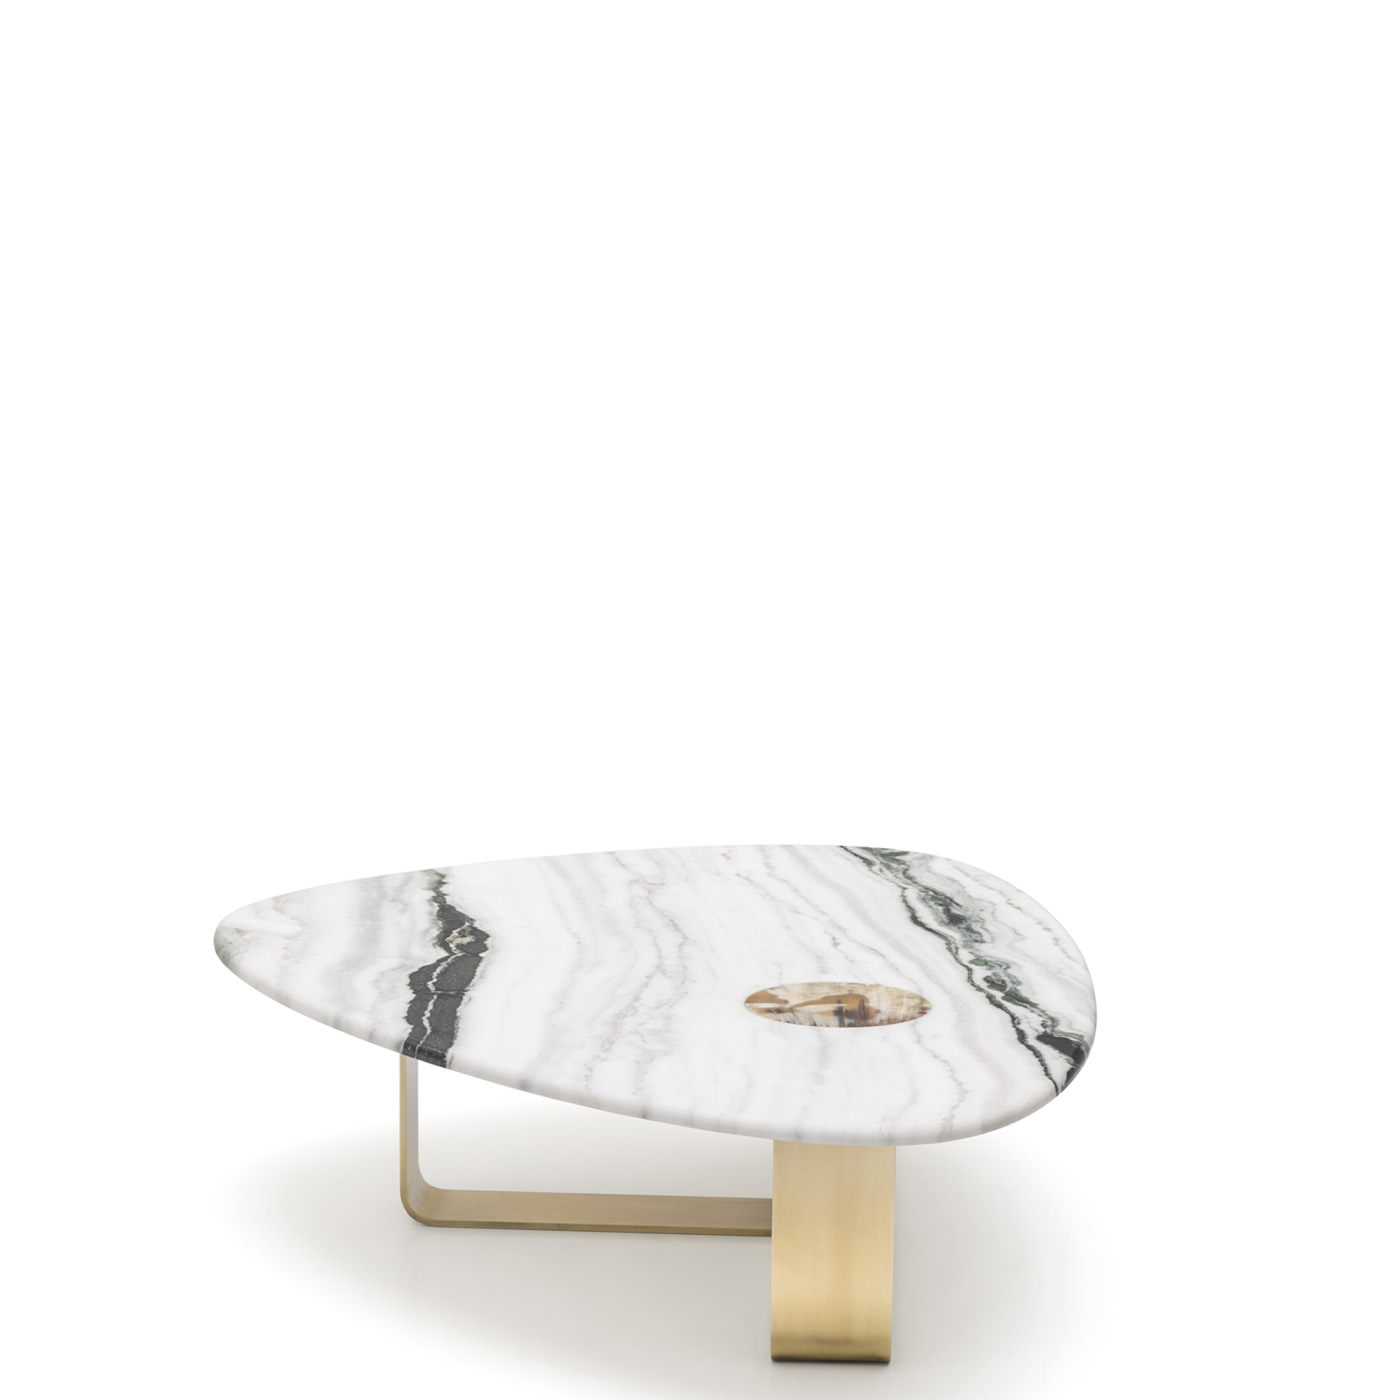 Tavoli e consolle - Demetra tavolo basso in marmo Dalmata - Arcahorn (6)